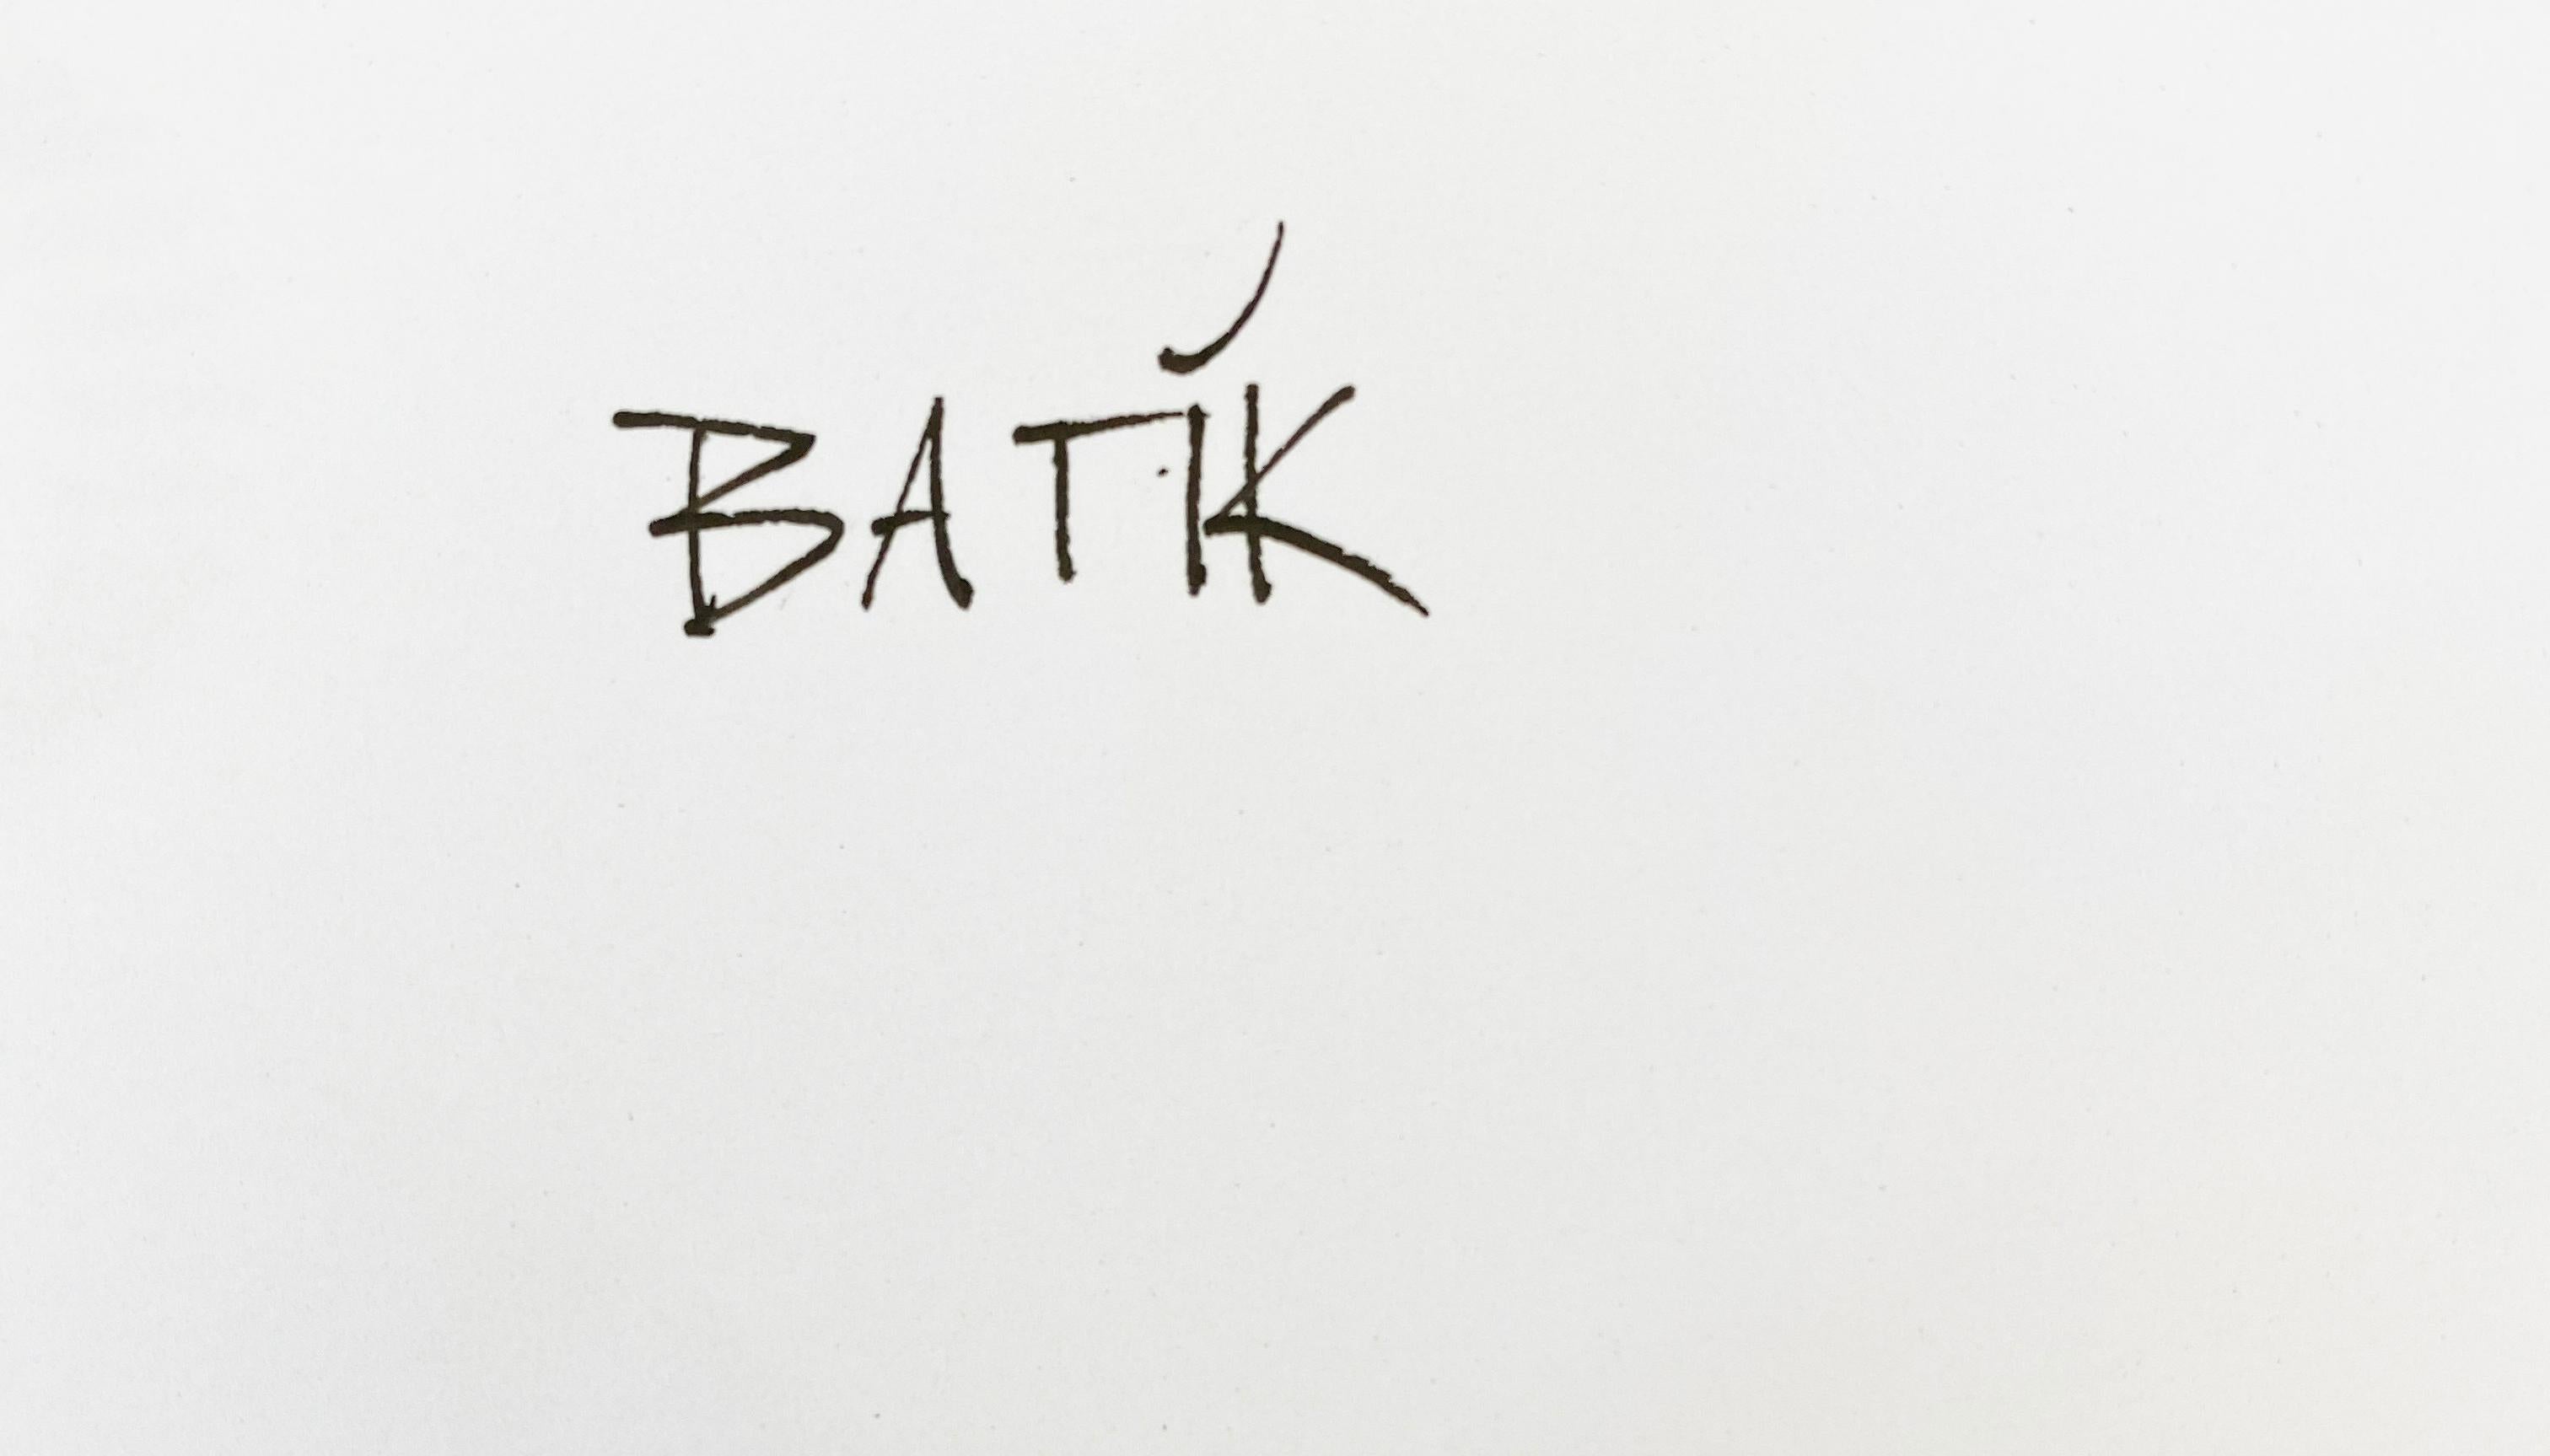 Ohh Baby!  - Handsignierte limitierte Auflage - Pop Art - Kate Moss

Archivalischer Pigmentdruck 

BATÍK ist ein in London ansässiger zeitgenössischer Pop-Art-Bildschöpfer und Künstler.

Maße 40 x 30 Zoll / 101 x 76 cm Papierformat.

Begrenzt auf 10